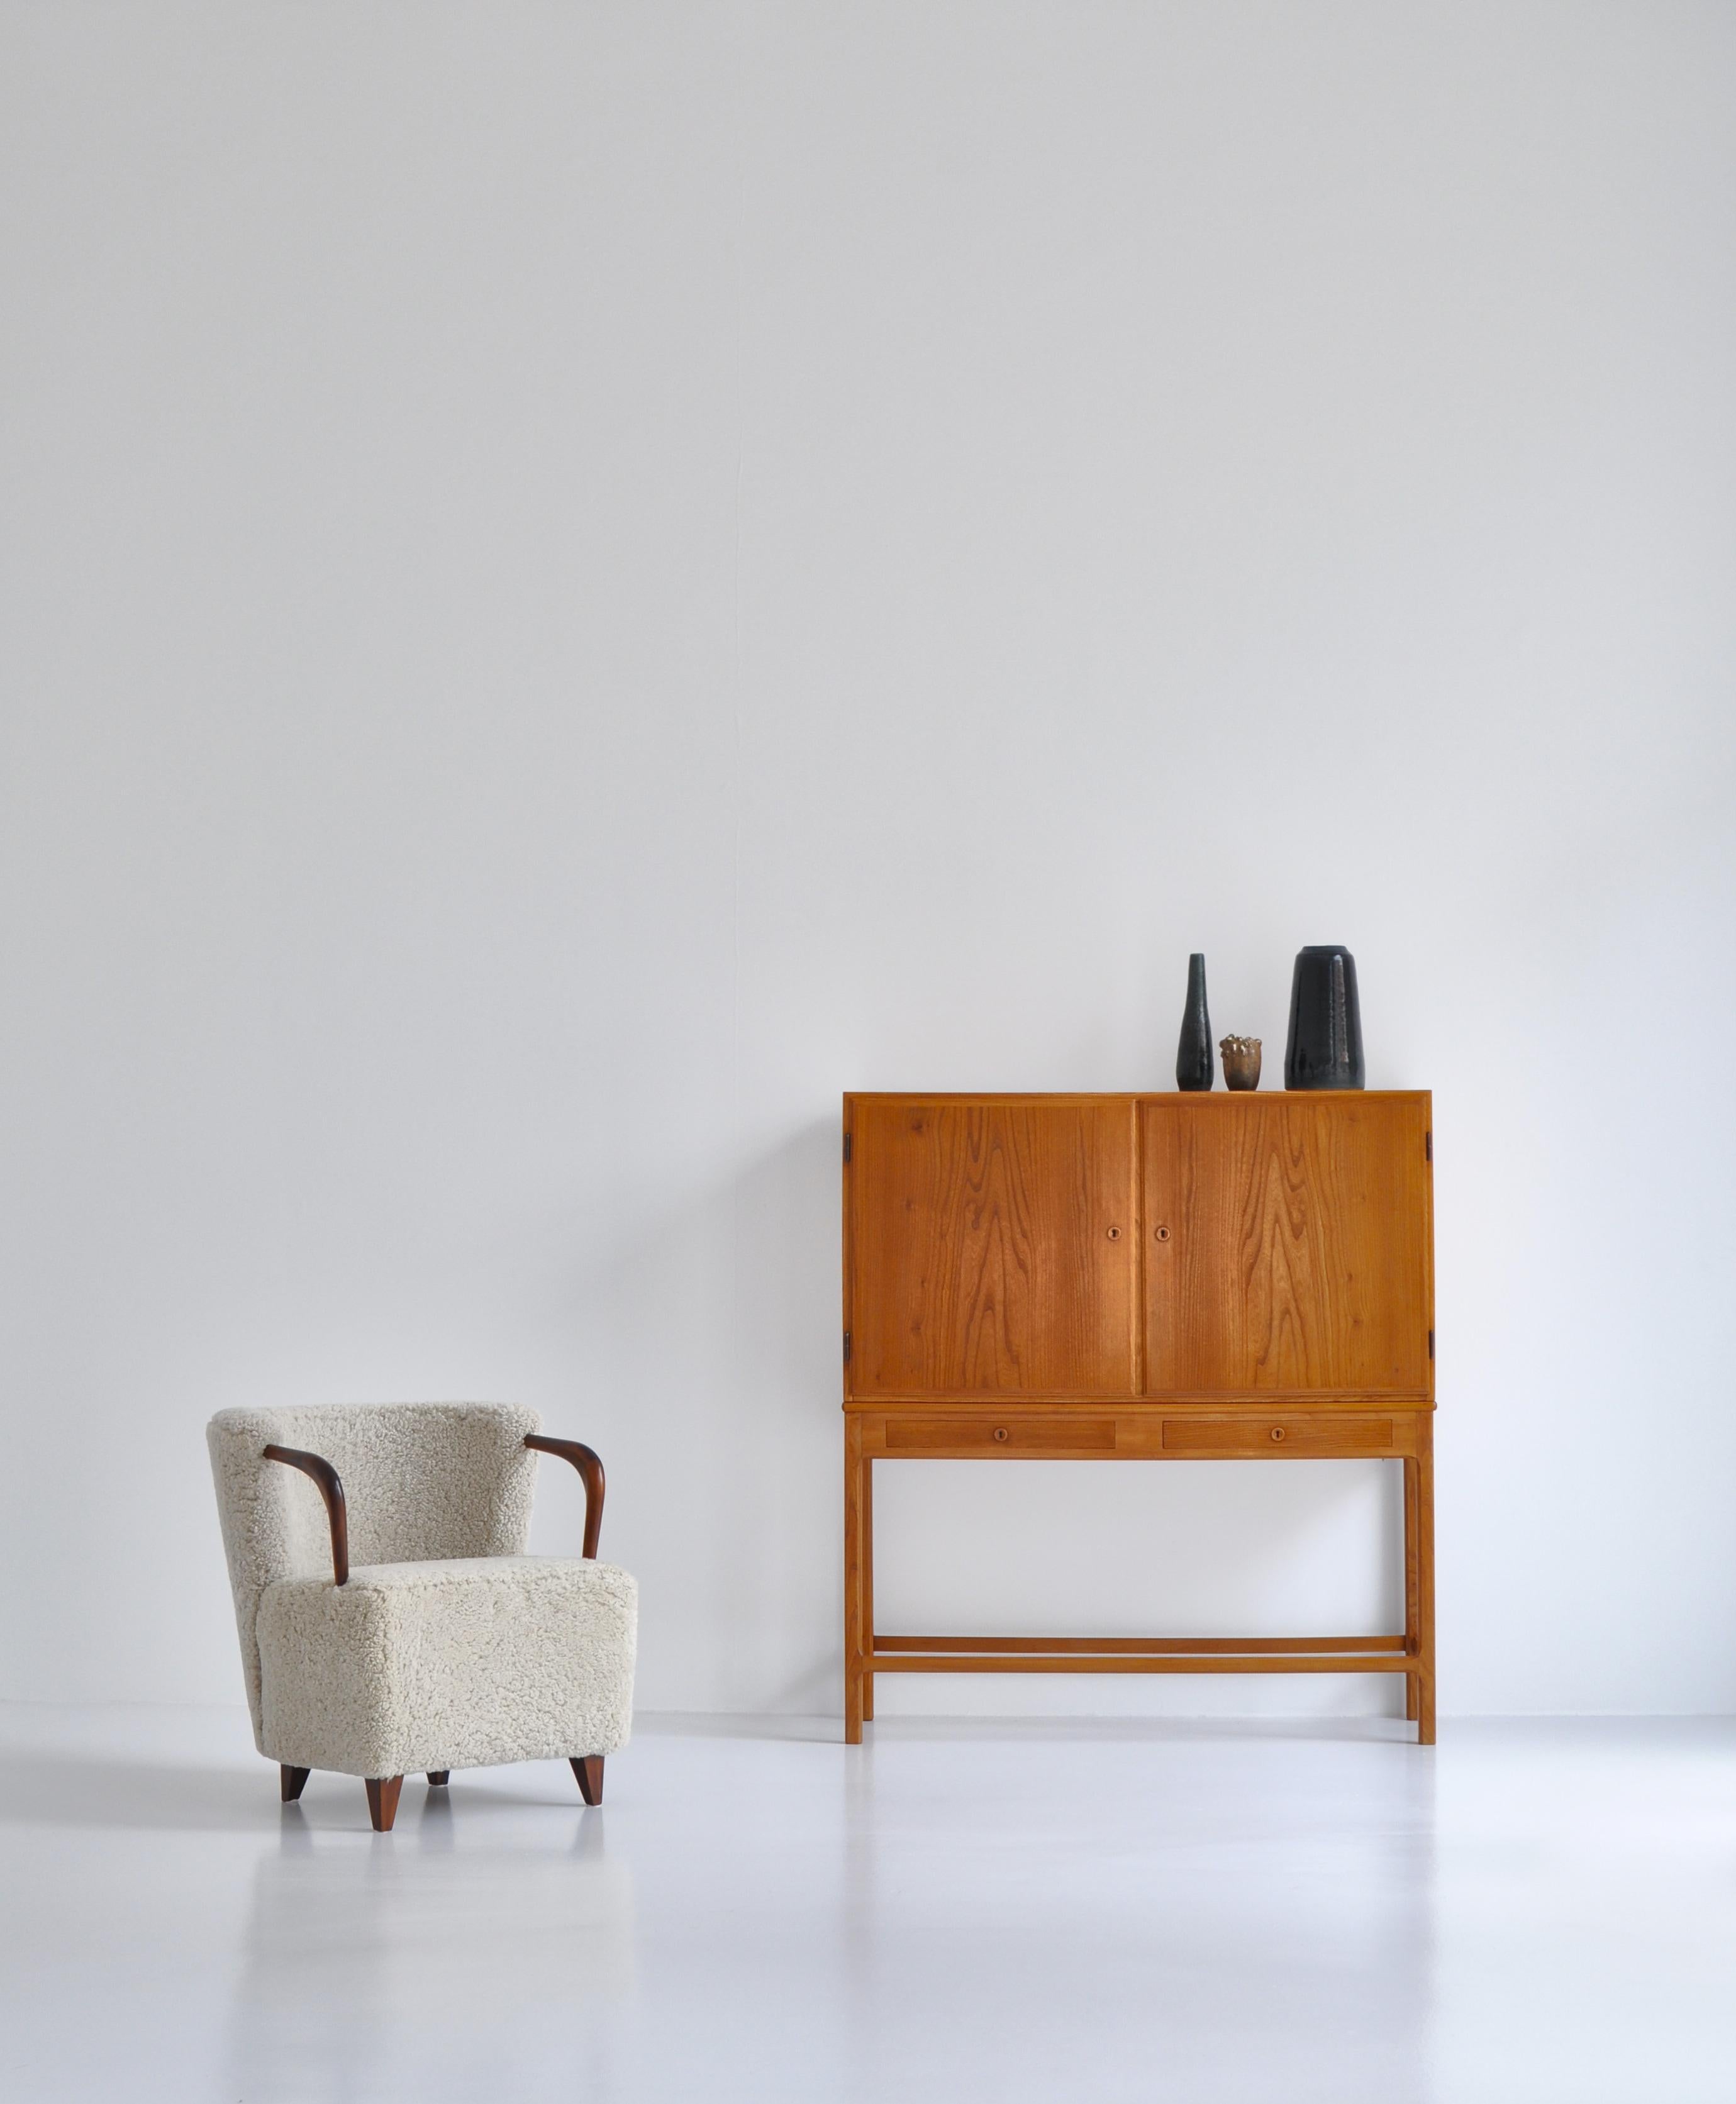 Pair of Sheepskin Armchairs, Danish Cabinetmaker, 1930s Midcentury Design 11